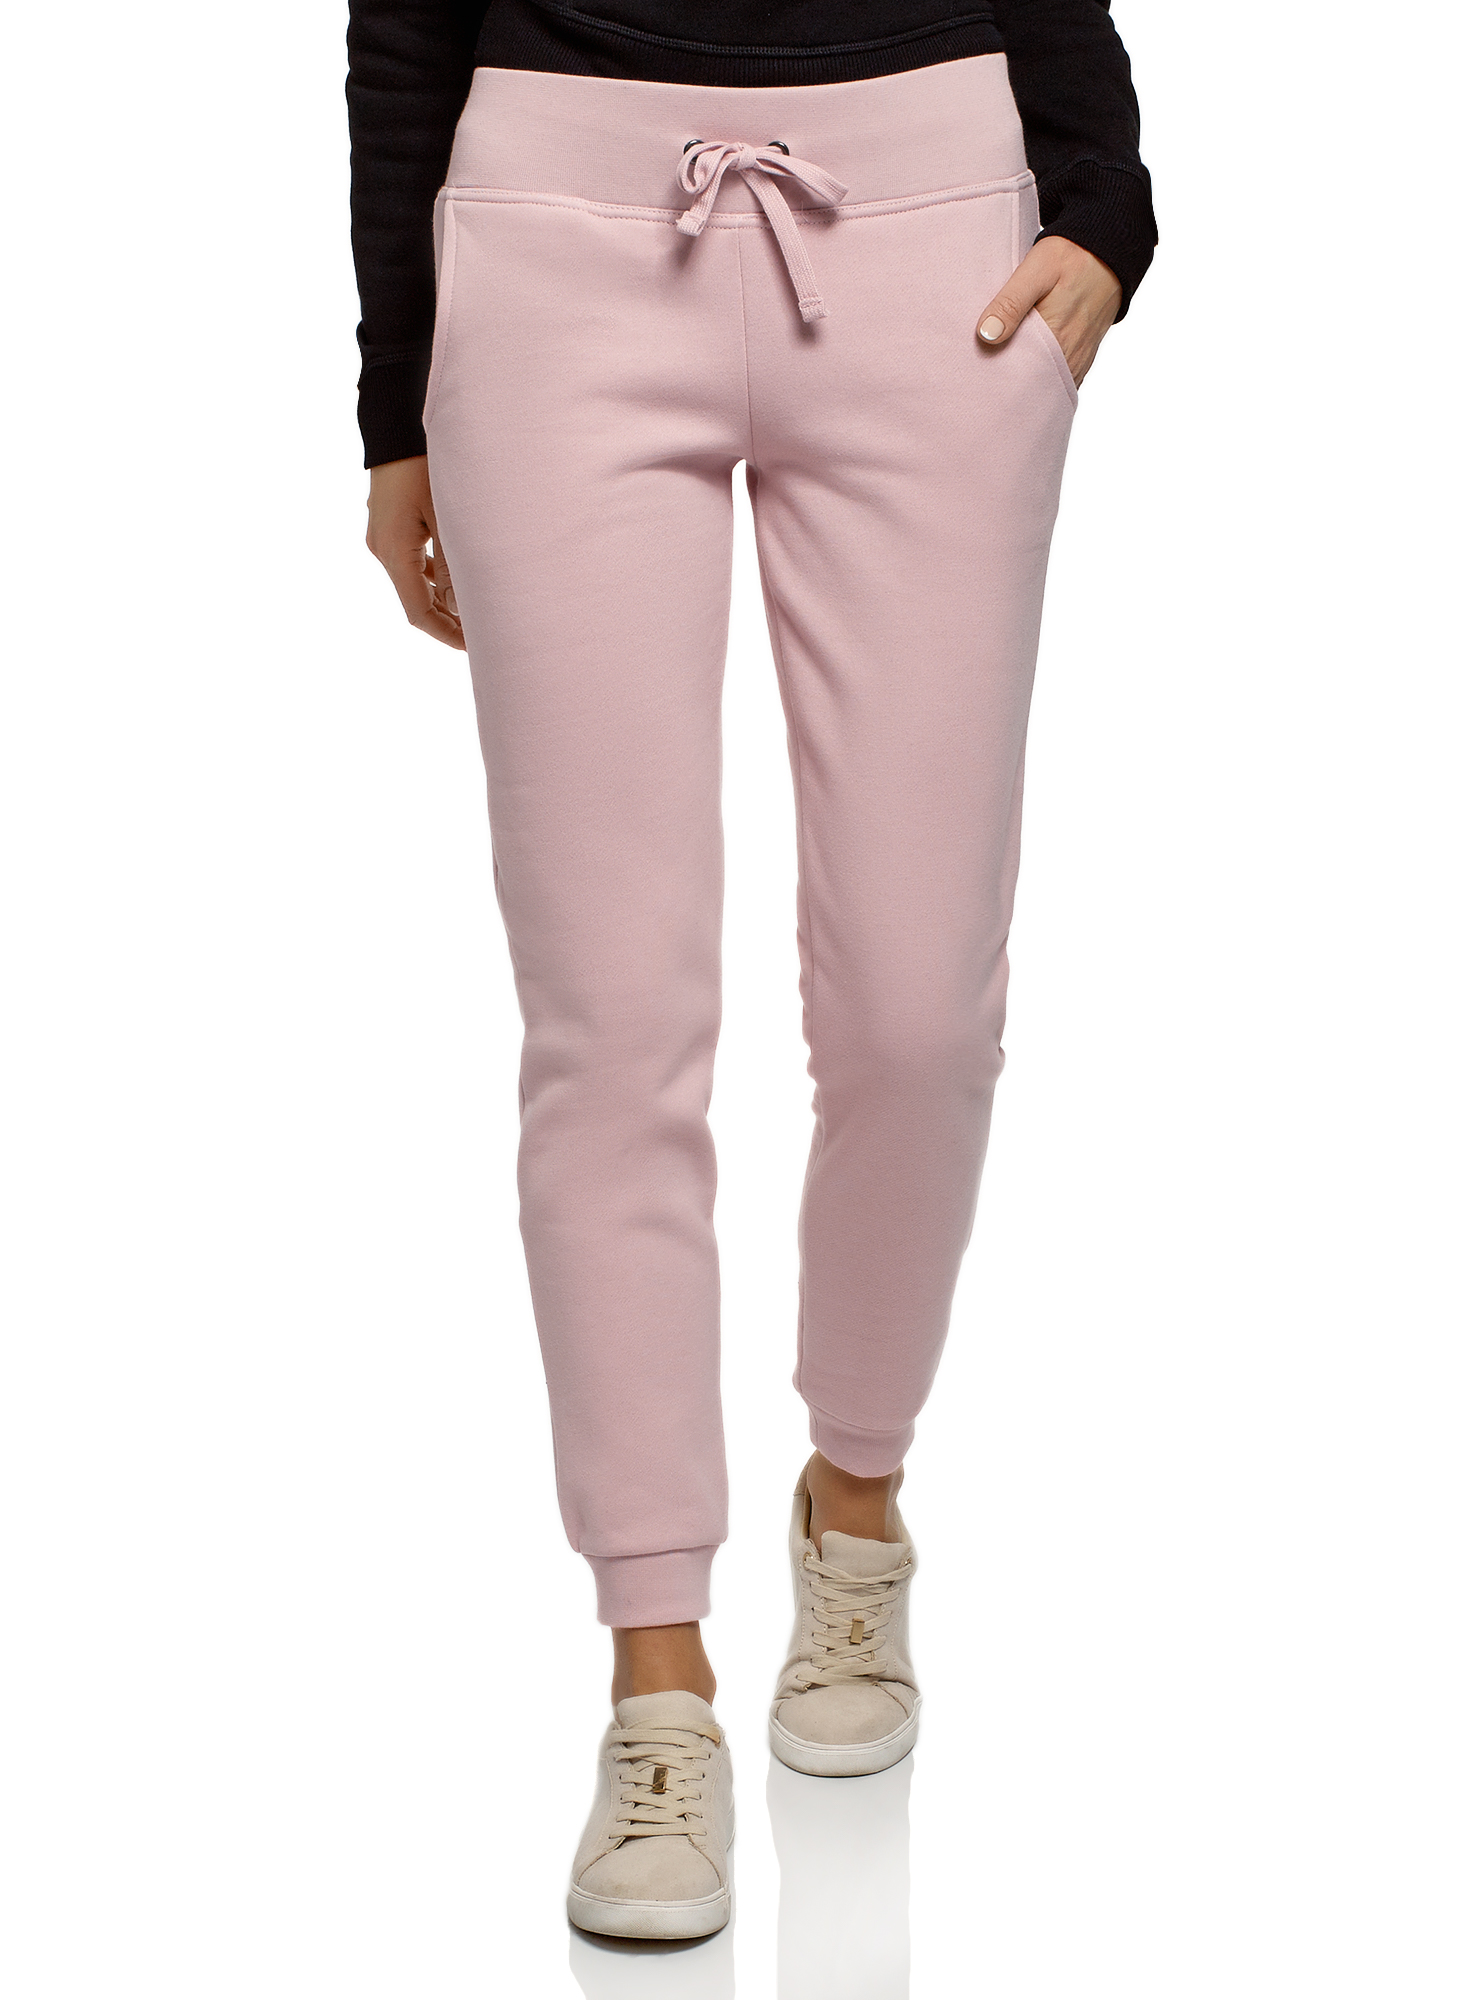 Спортивные брюки женские oodji 16700030-25B розовые L